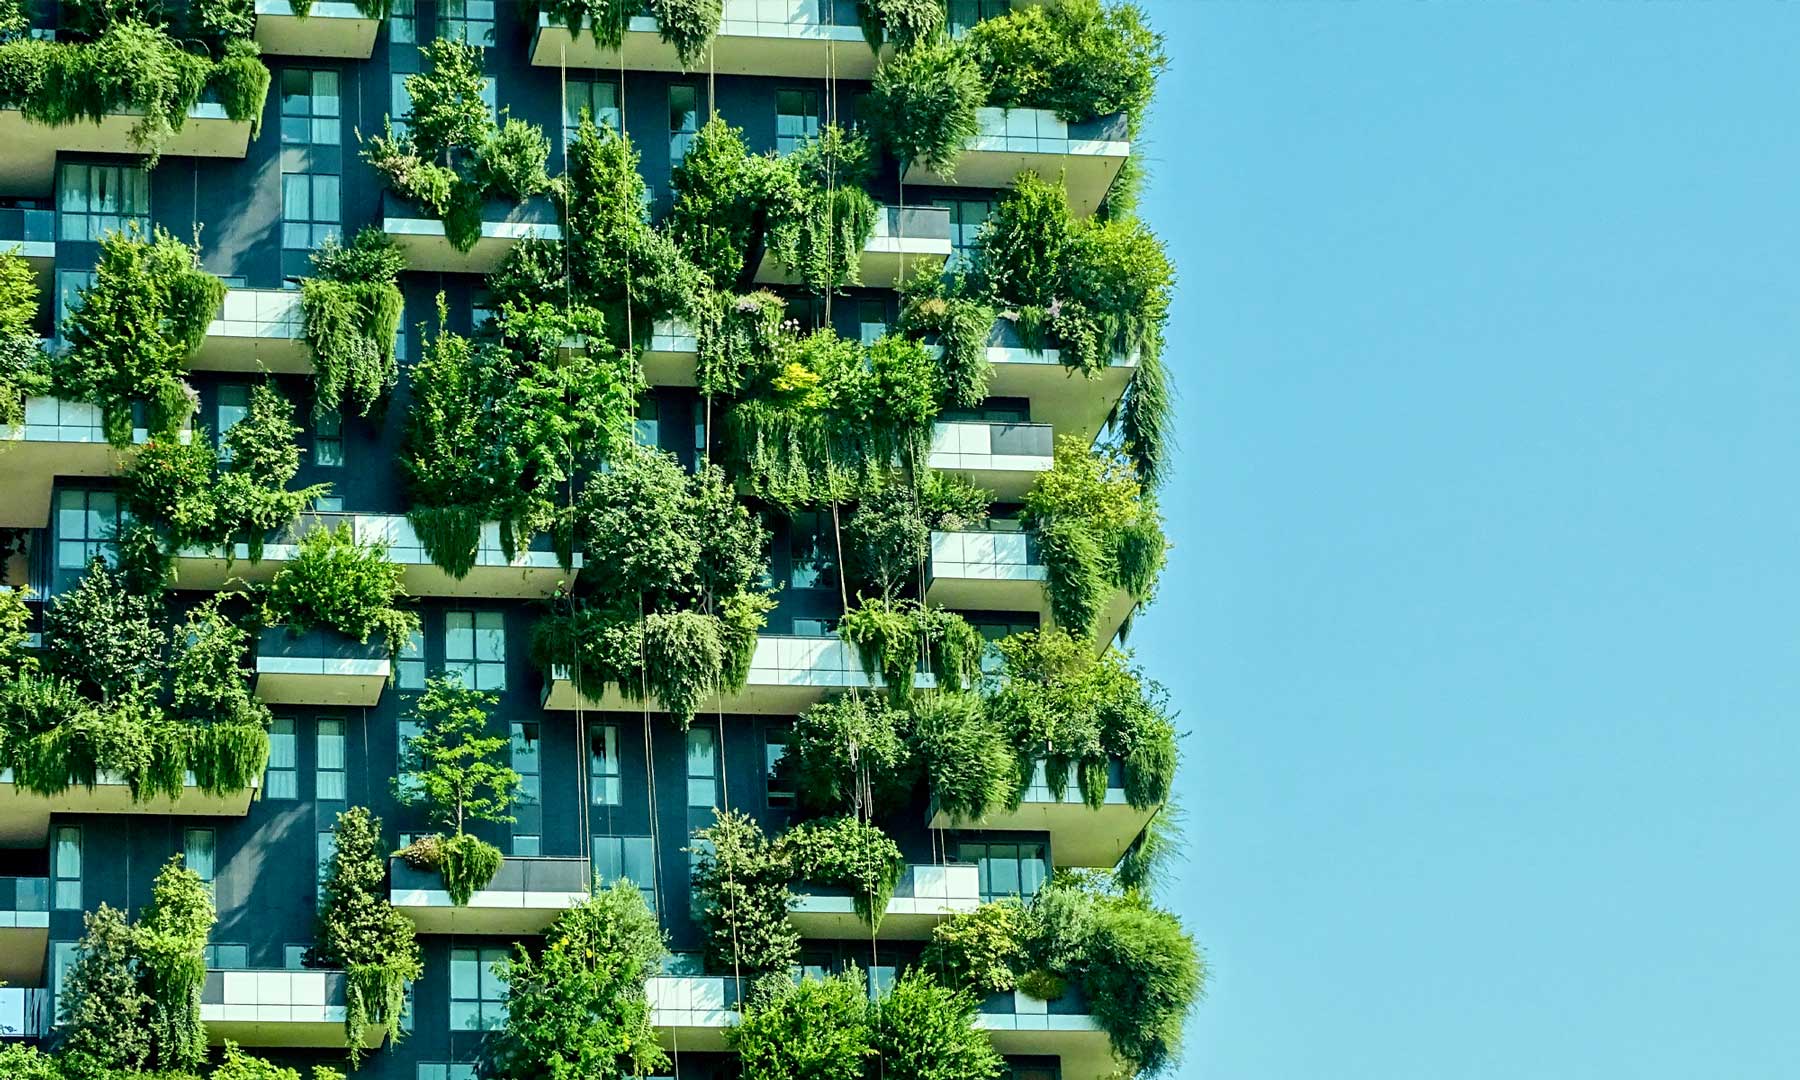 בניין מגורים עם עלווה ירוקה הצומחת בכל הקומות